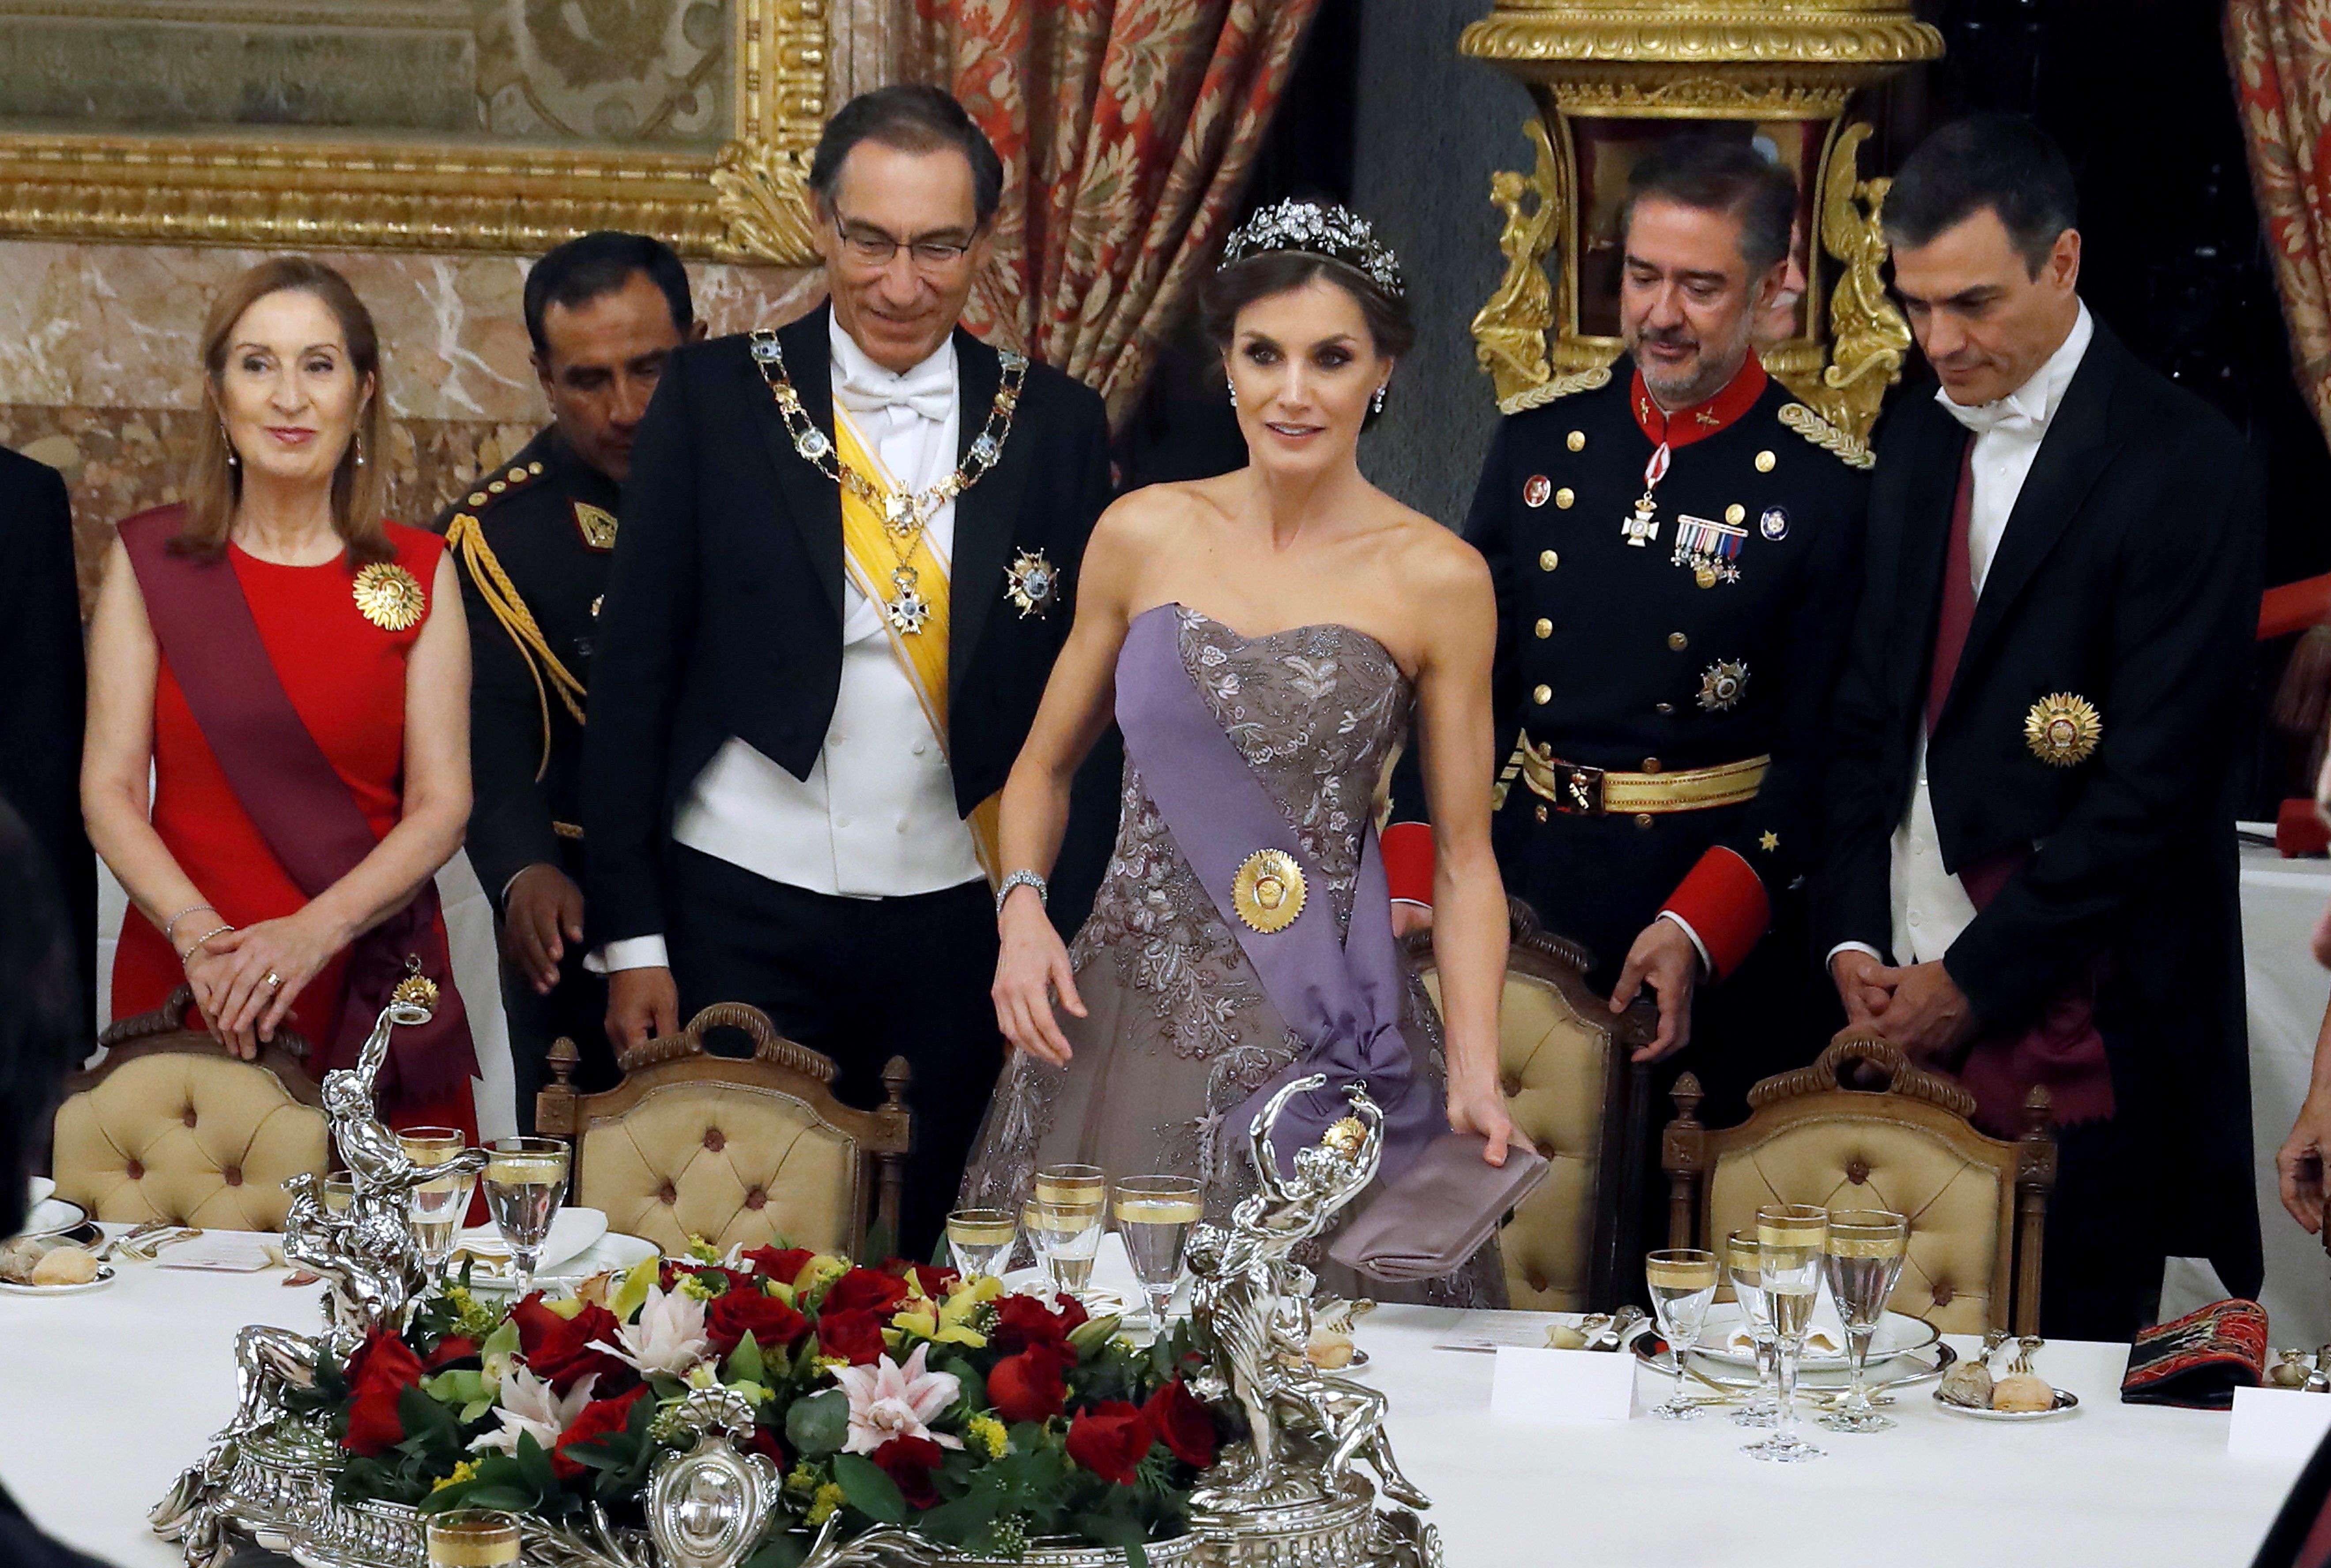 La pifia de Letizia disfrazándose de princesa Disney en una cena de Estado